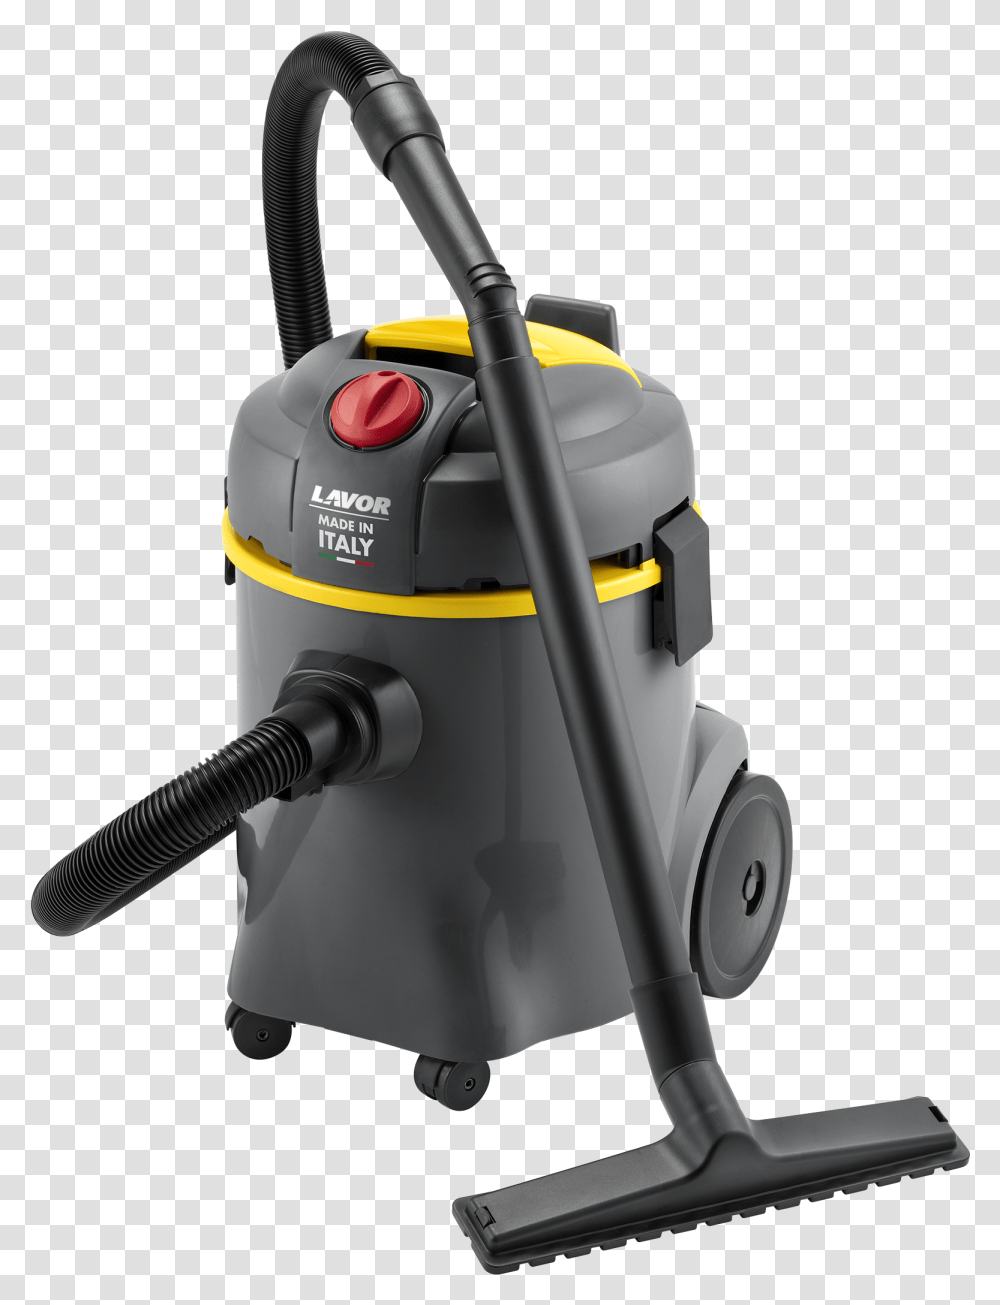 Lavor Wt 20 P Lavor Vacuum Cleaner, Appliance Transparent Png